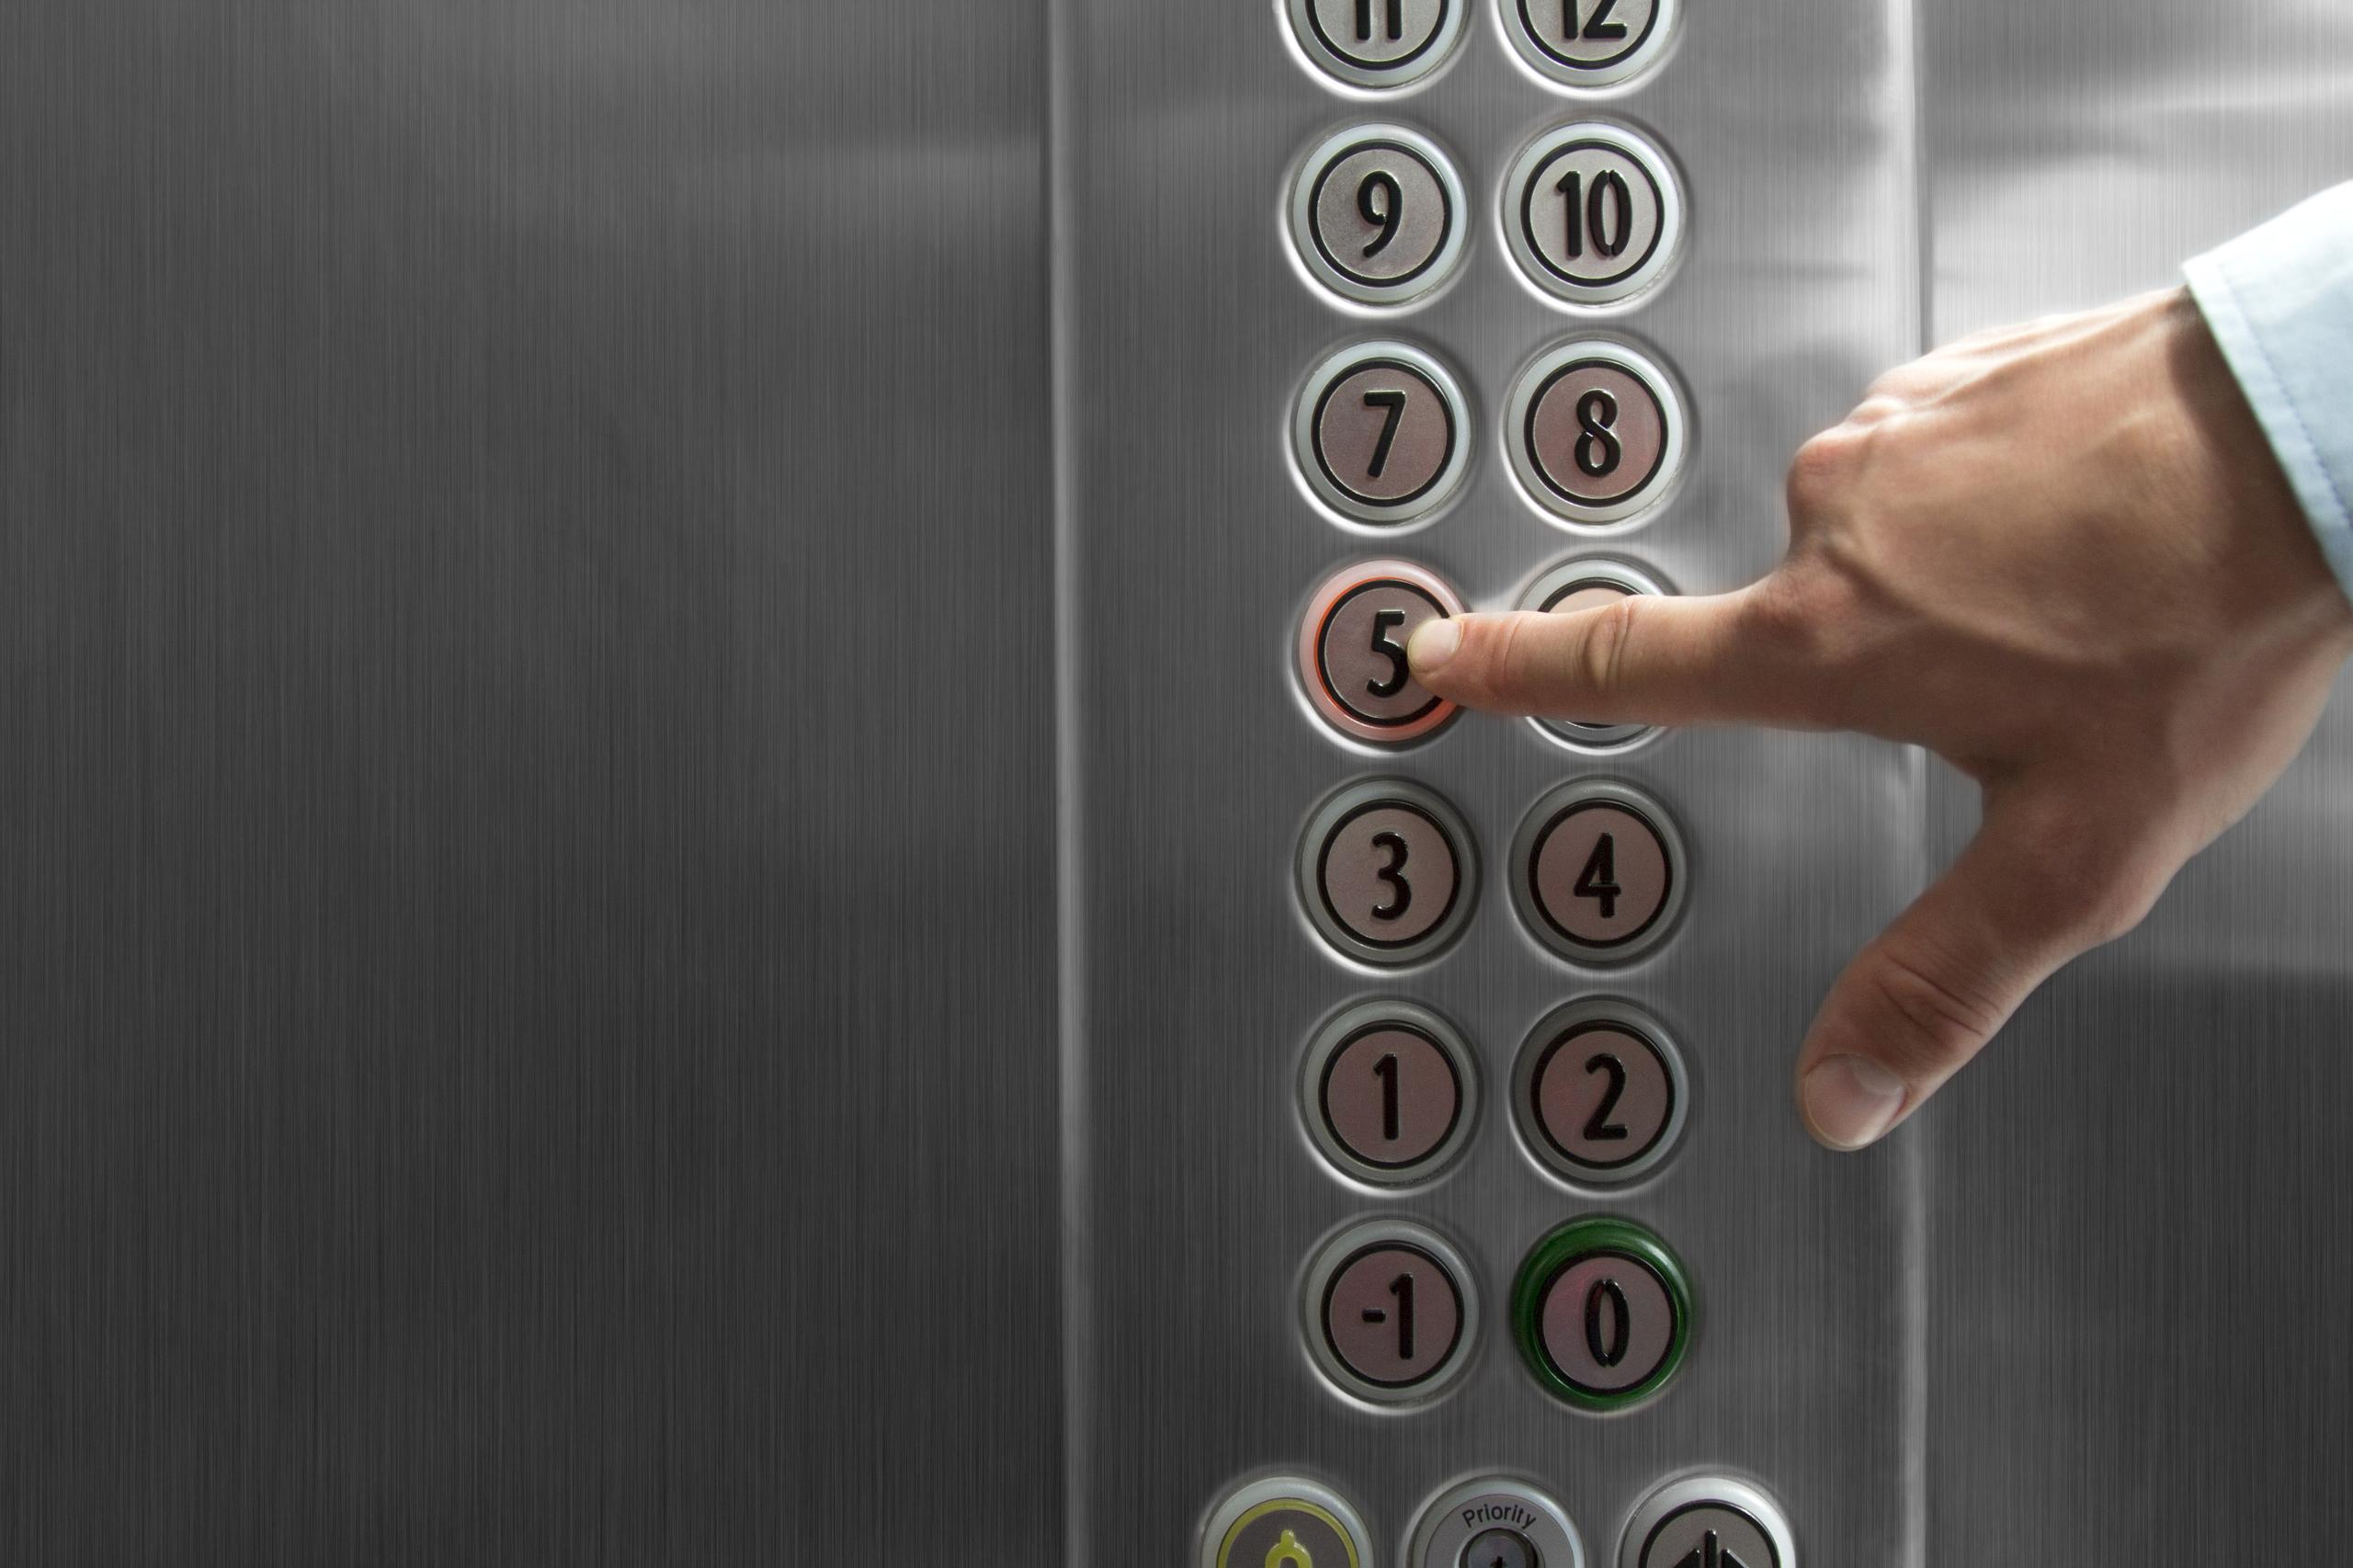 Revisió d'ascensors a Mataró